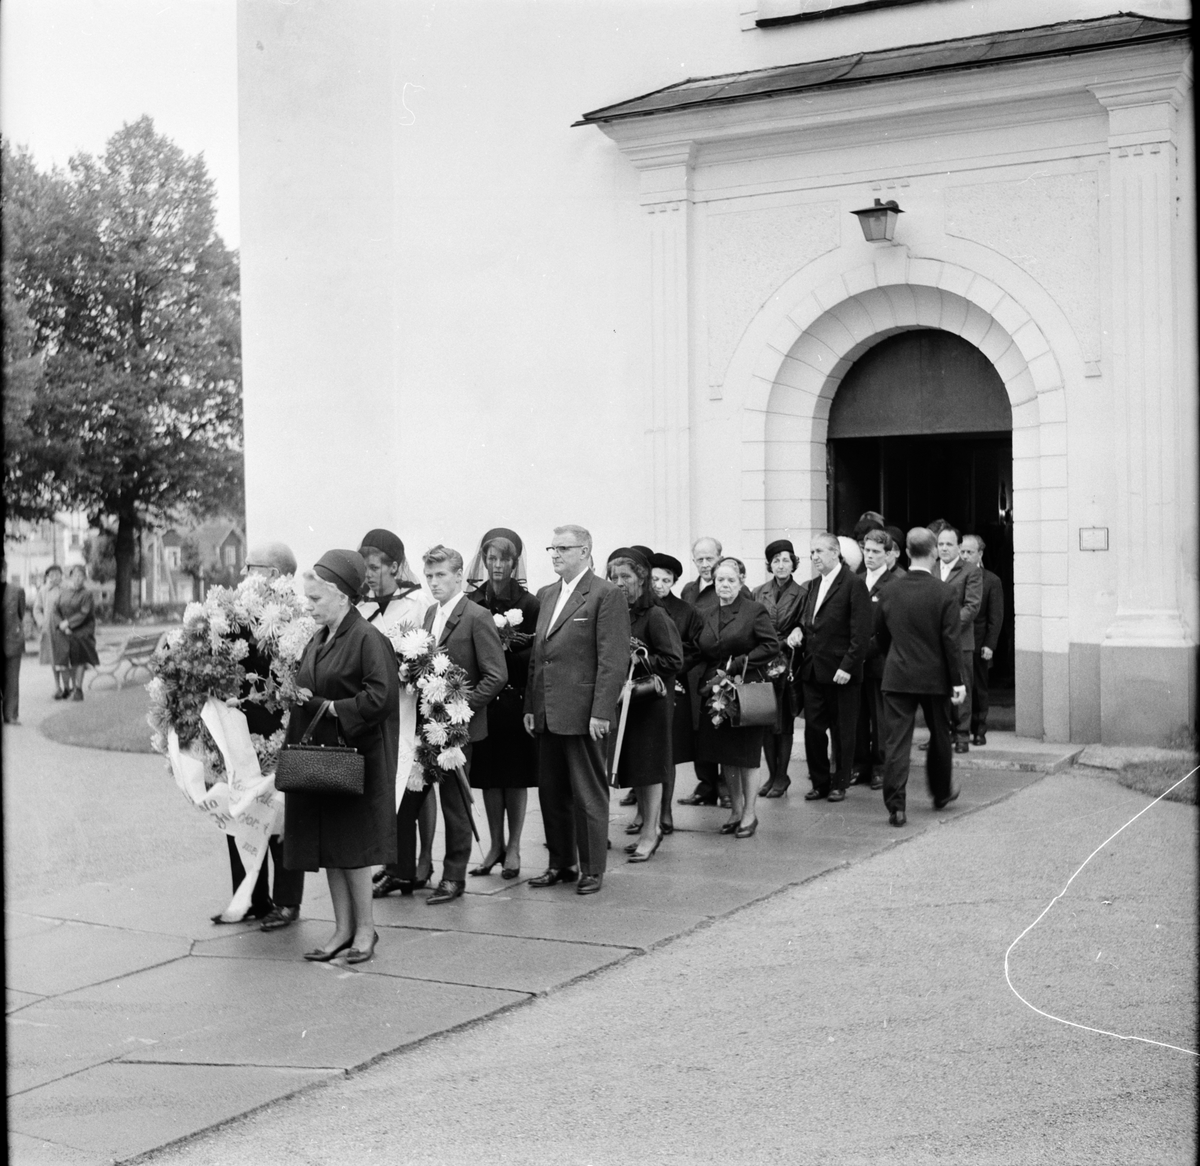 Stig Östs jordfästning i Bollnäs kyrka
9/9-1966